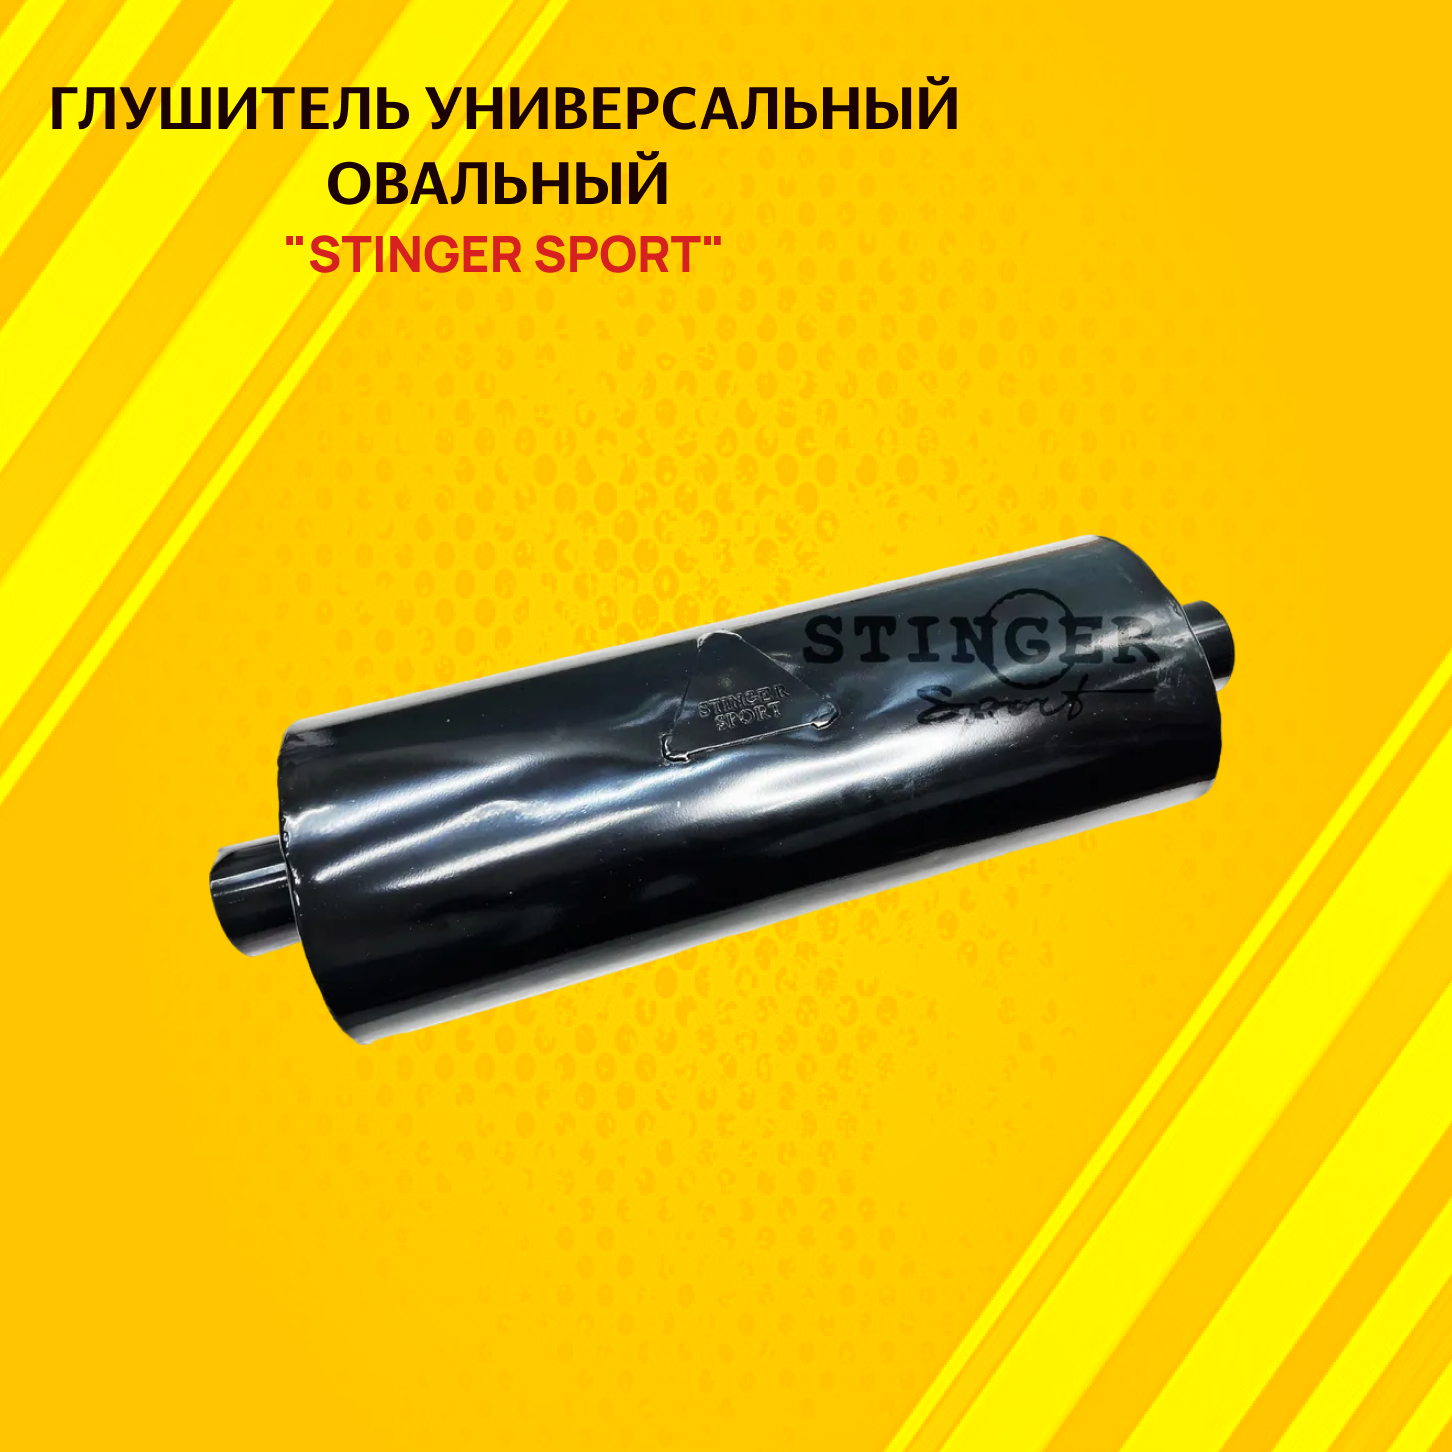 Глушитель STINGER SPORT универсальный овальный 140х200х480 мм вход 51мм.